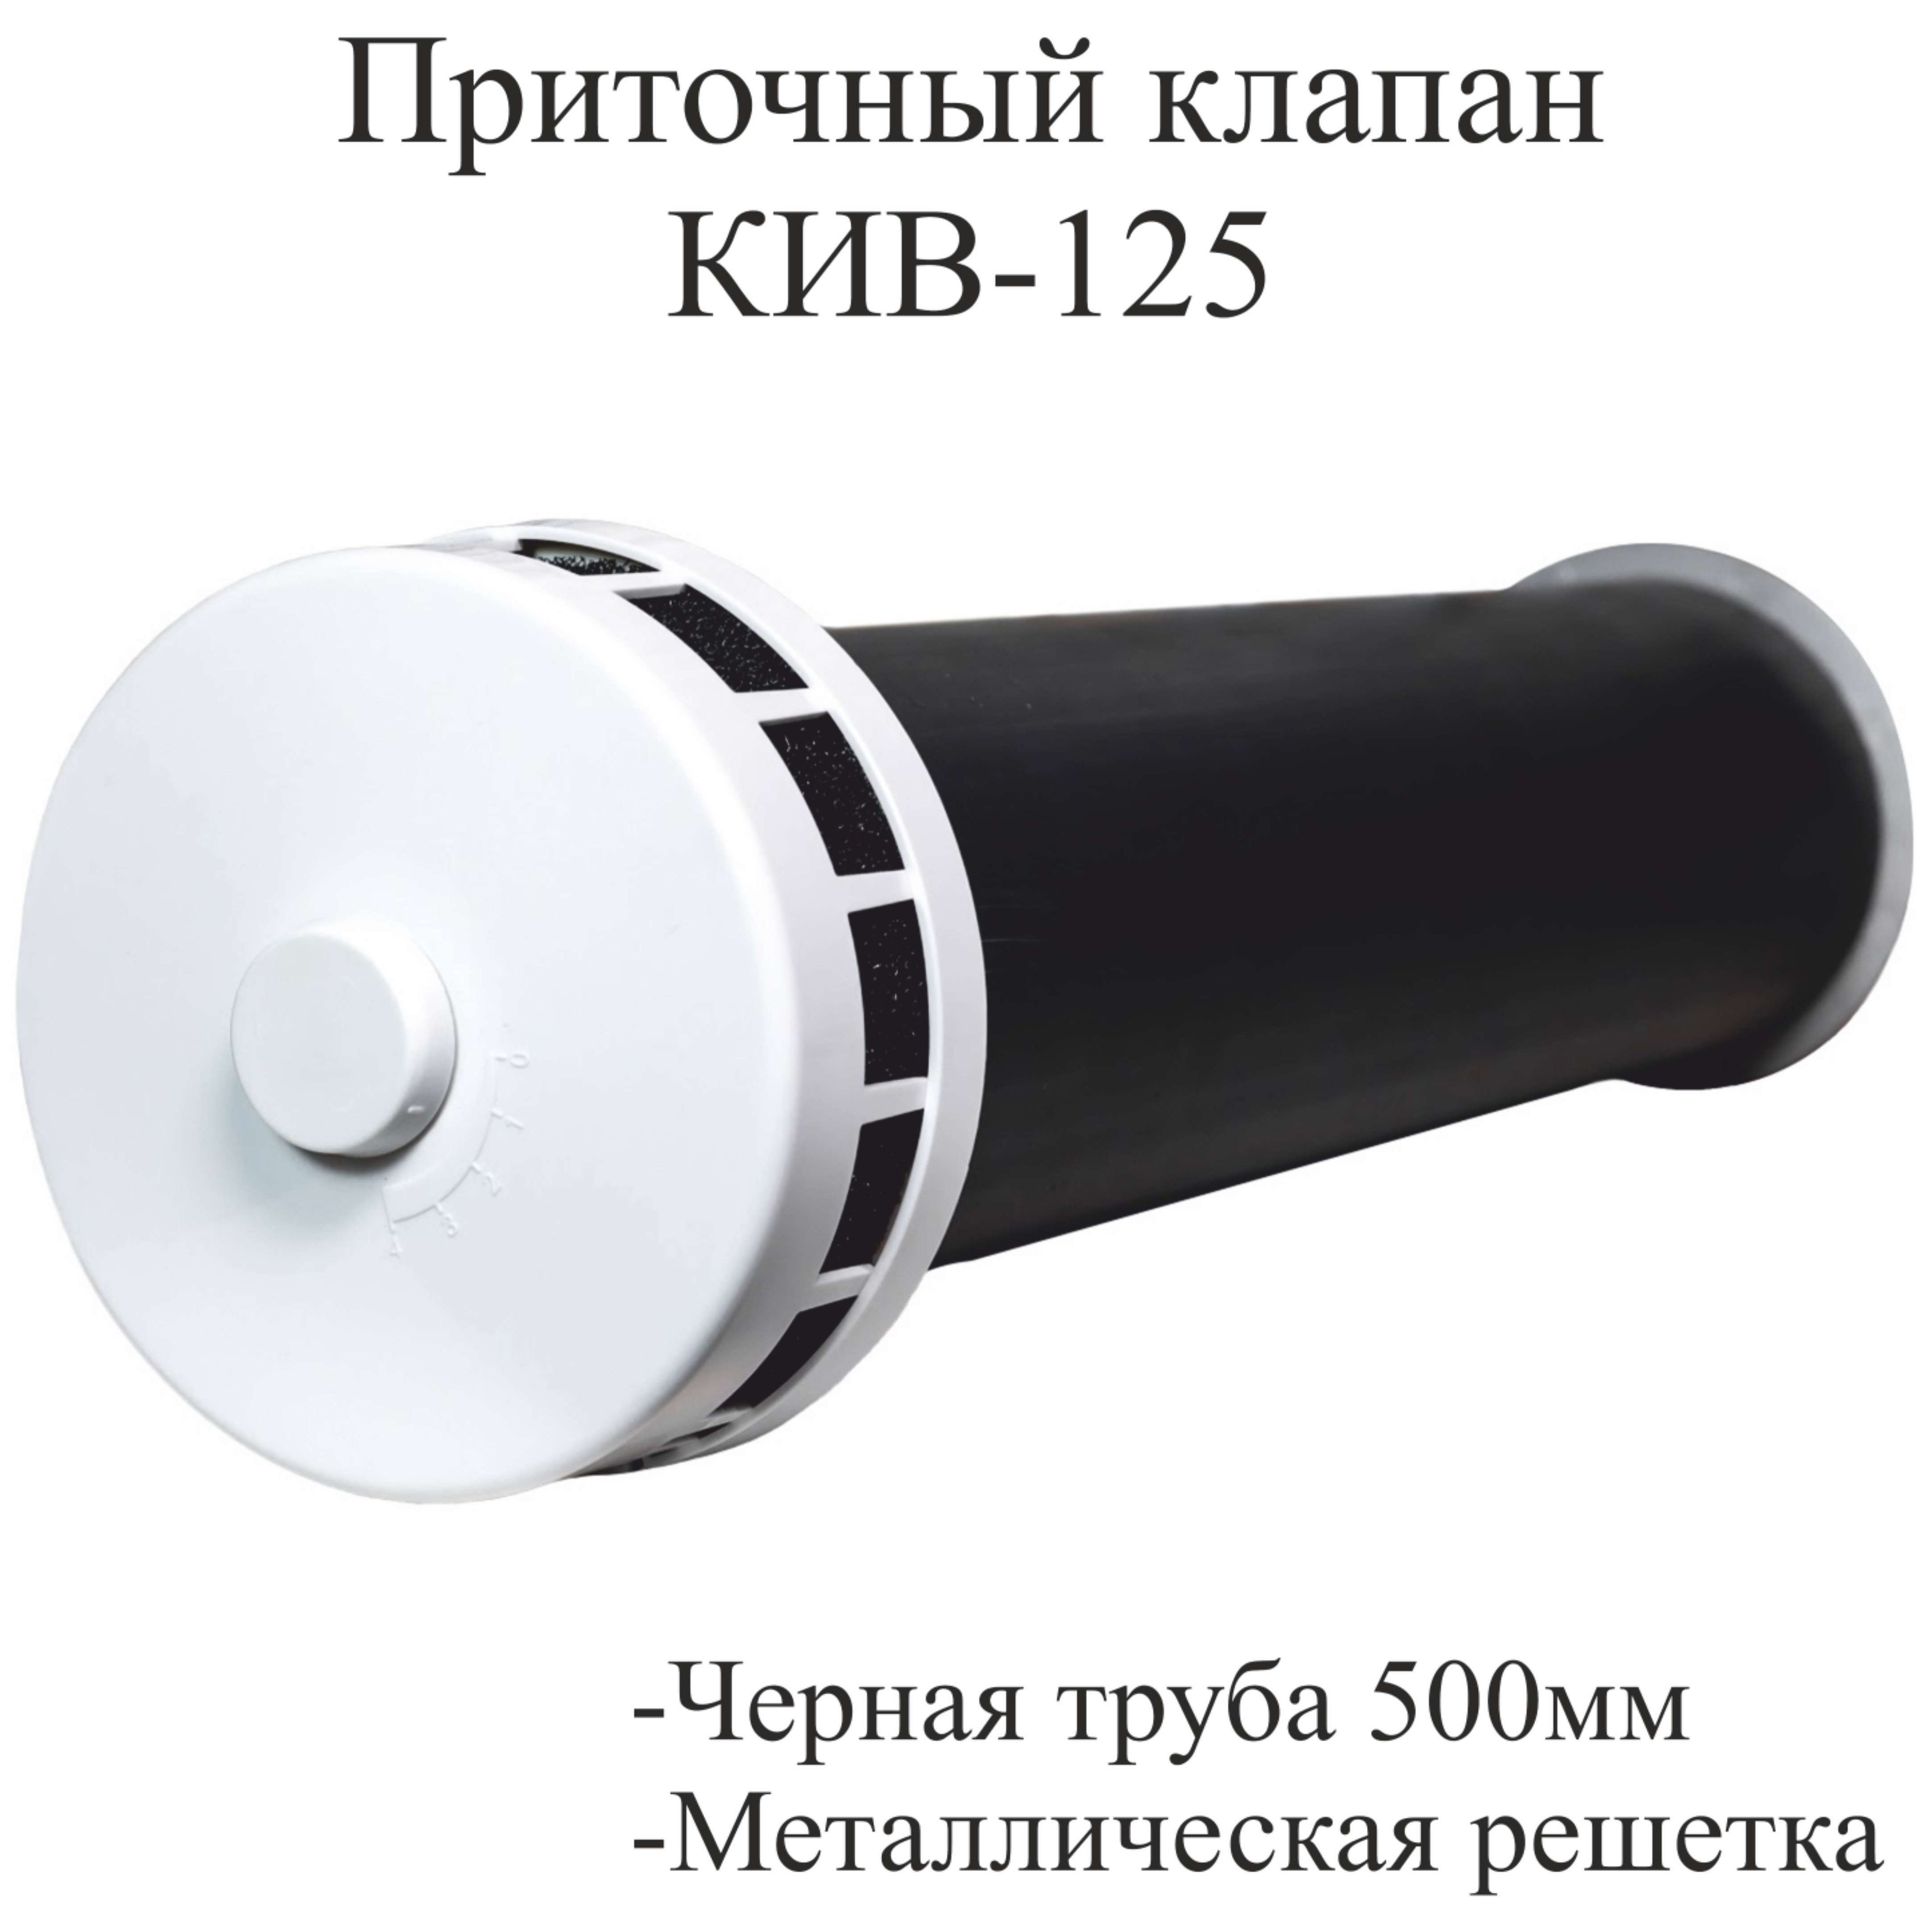 ПриточныйклапанКИВ-125комплект0,5м.(КИВ-125-500)